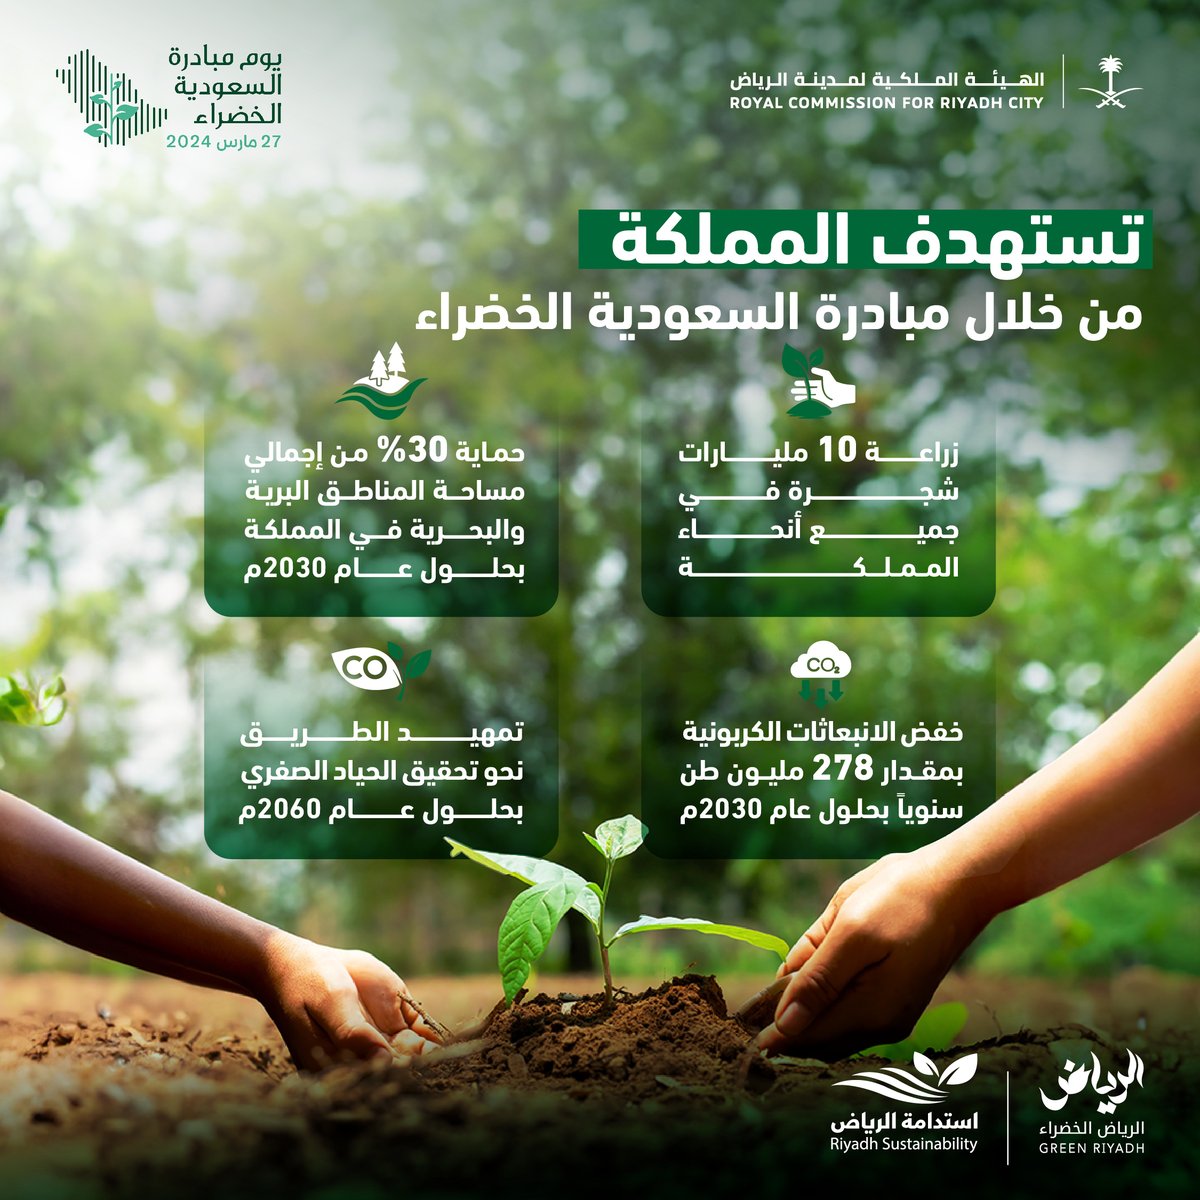 منذ إطلاقها في عام 2021م، تعمل #مبادرة_السعودية_الخضراء على تعزيز جهود حماية البيئة، وبرامج الاستدامة، لتحقيق مستهدفاتها #لمستقبل_أكثر_استدامة